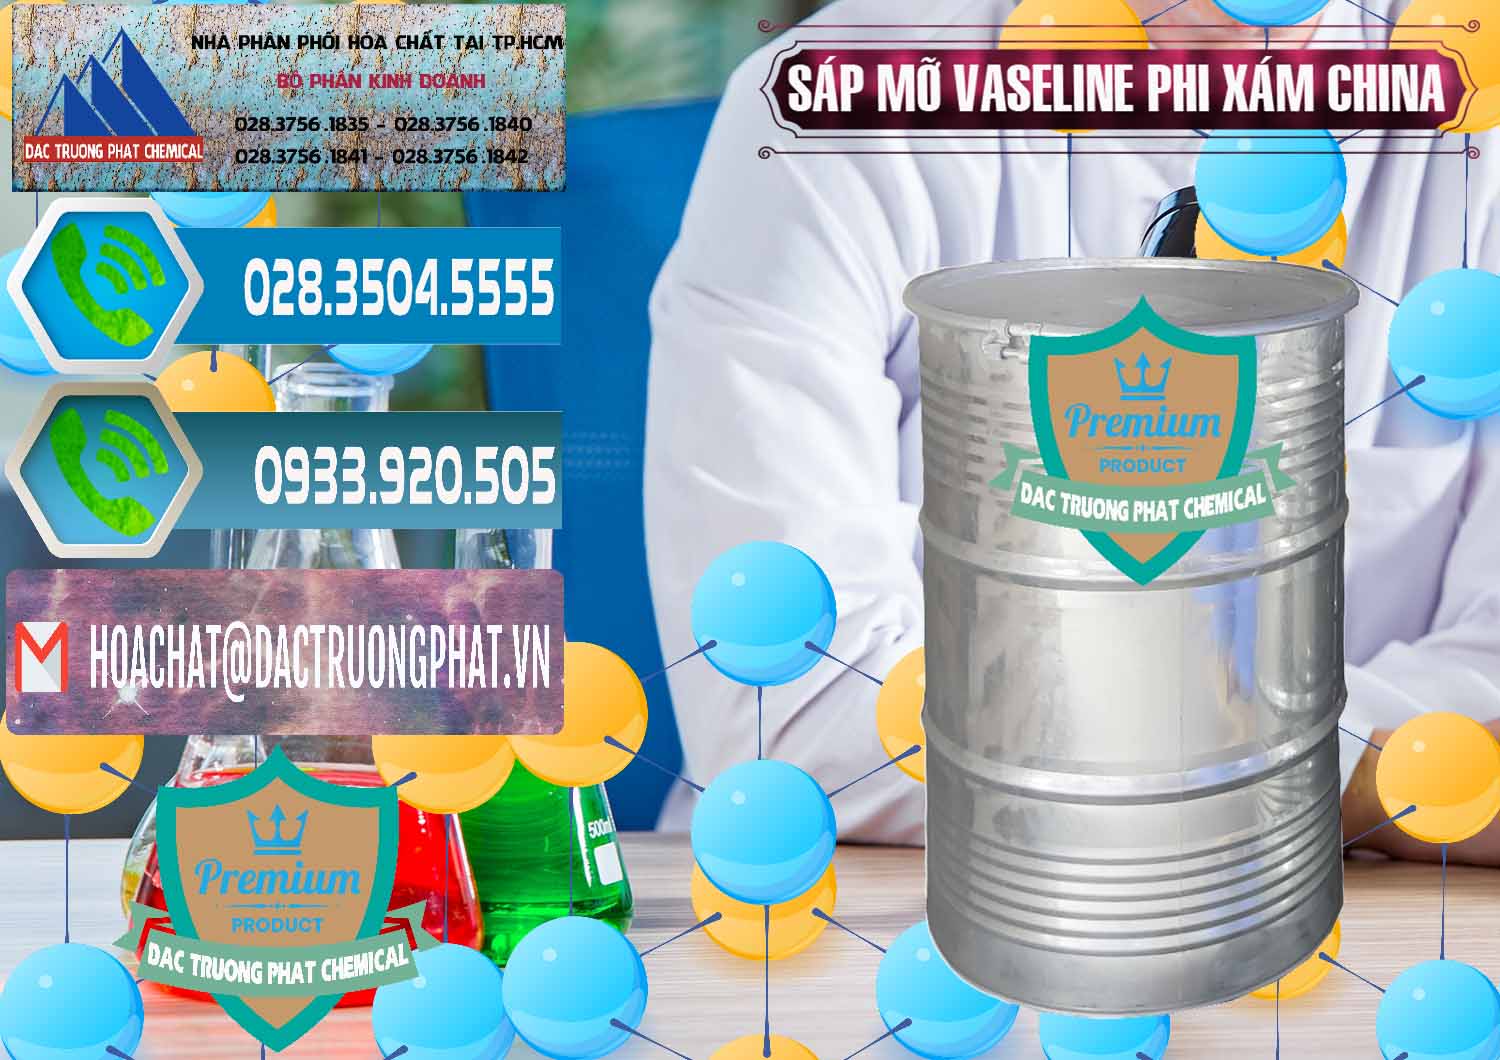 Cty bán & phân phối Sáp Mỡ Vaseline Phi Xám Trung Quốc China - 0291 - Chuyên cung cấp ( nhập khẩu ) hóa chất tại TP.HCM - congtyhoachat.net